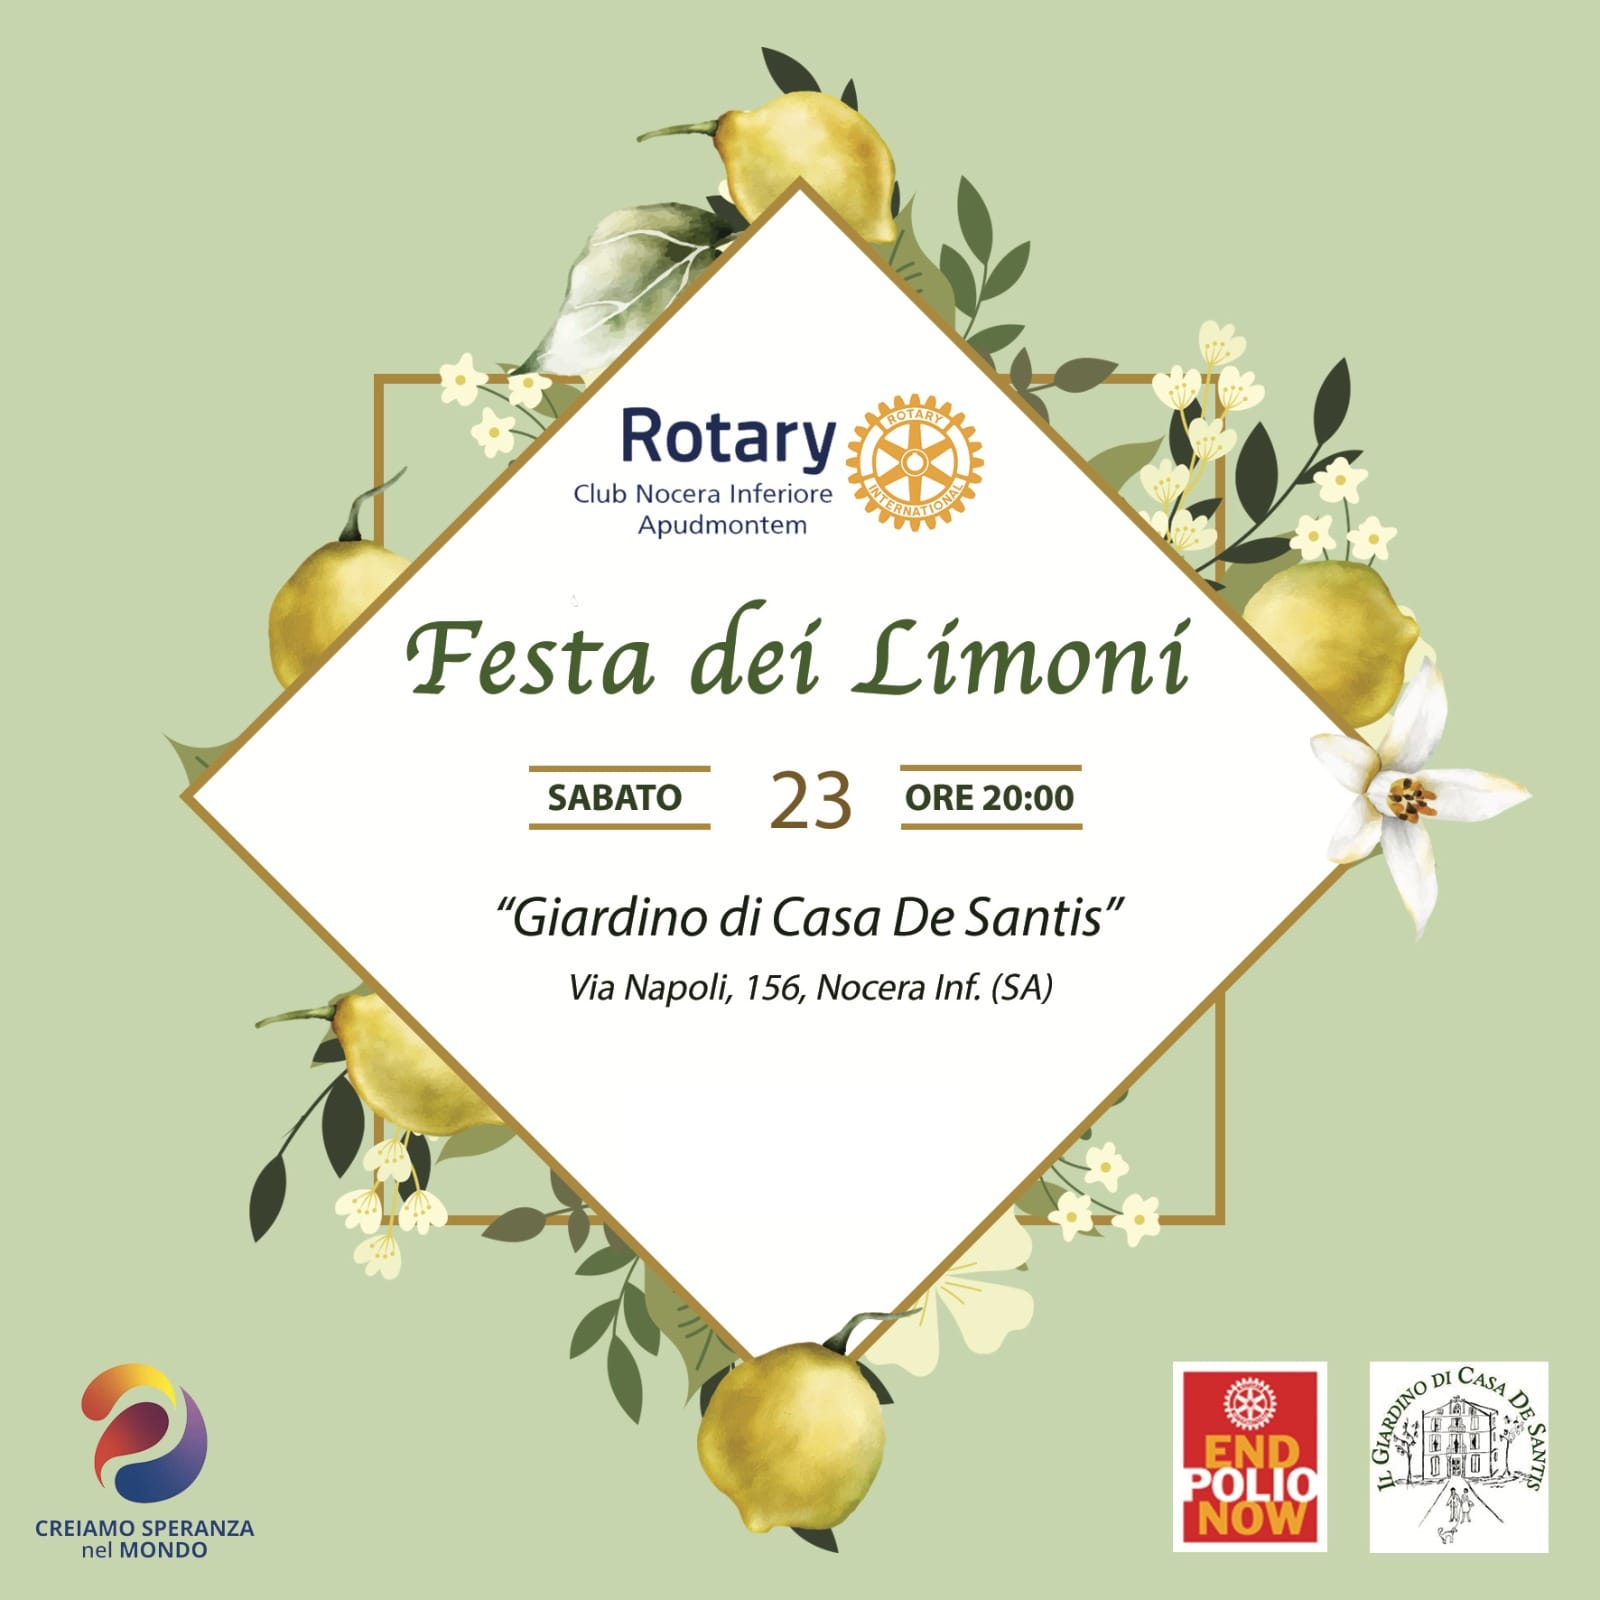 Nocera Inferiore: Rotary Apudmontem “Festa dei Limoni” al Giardino di Casa De Santis